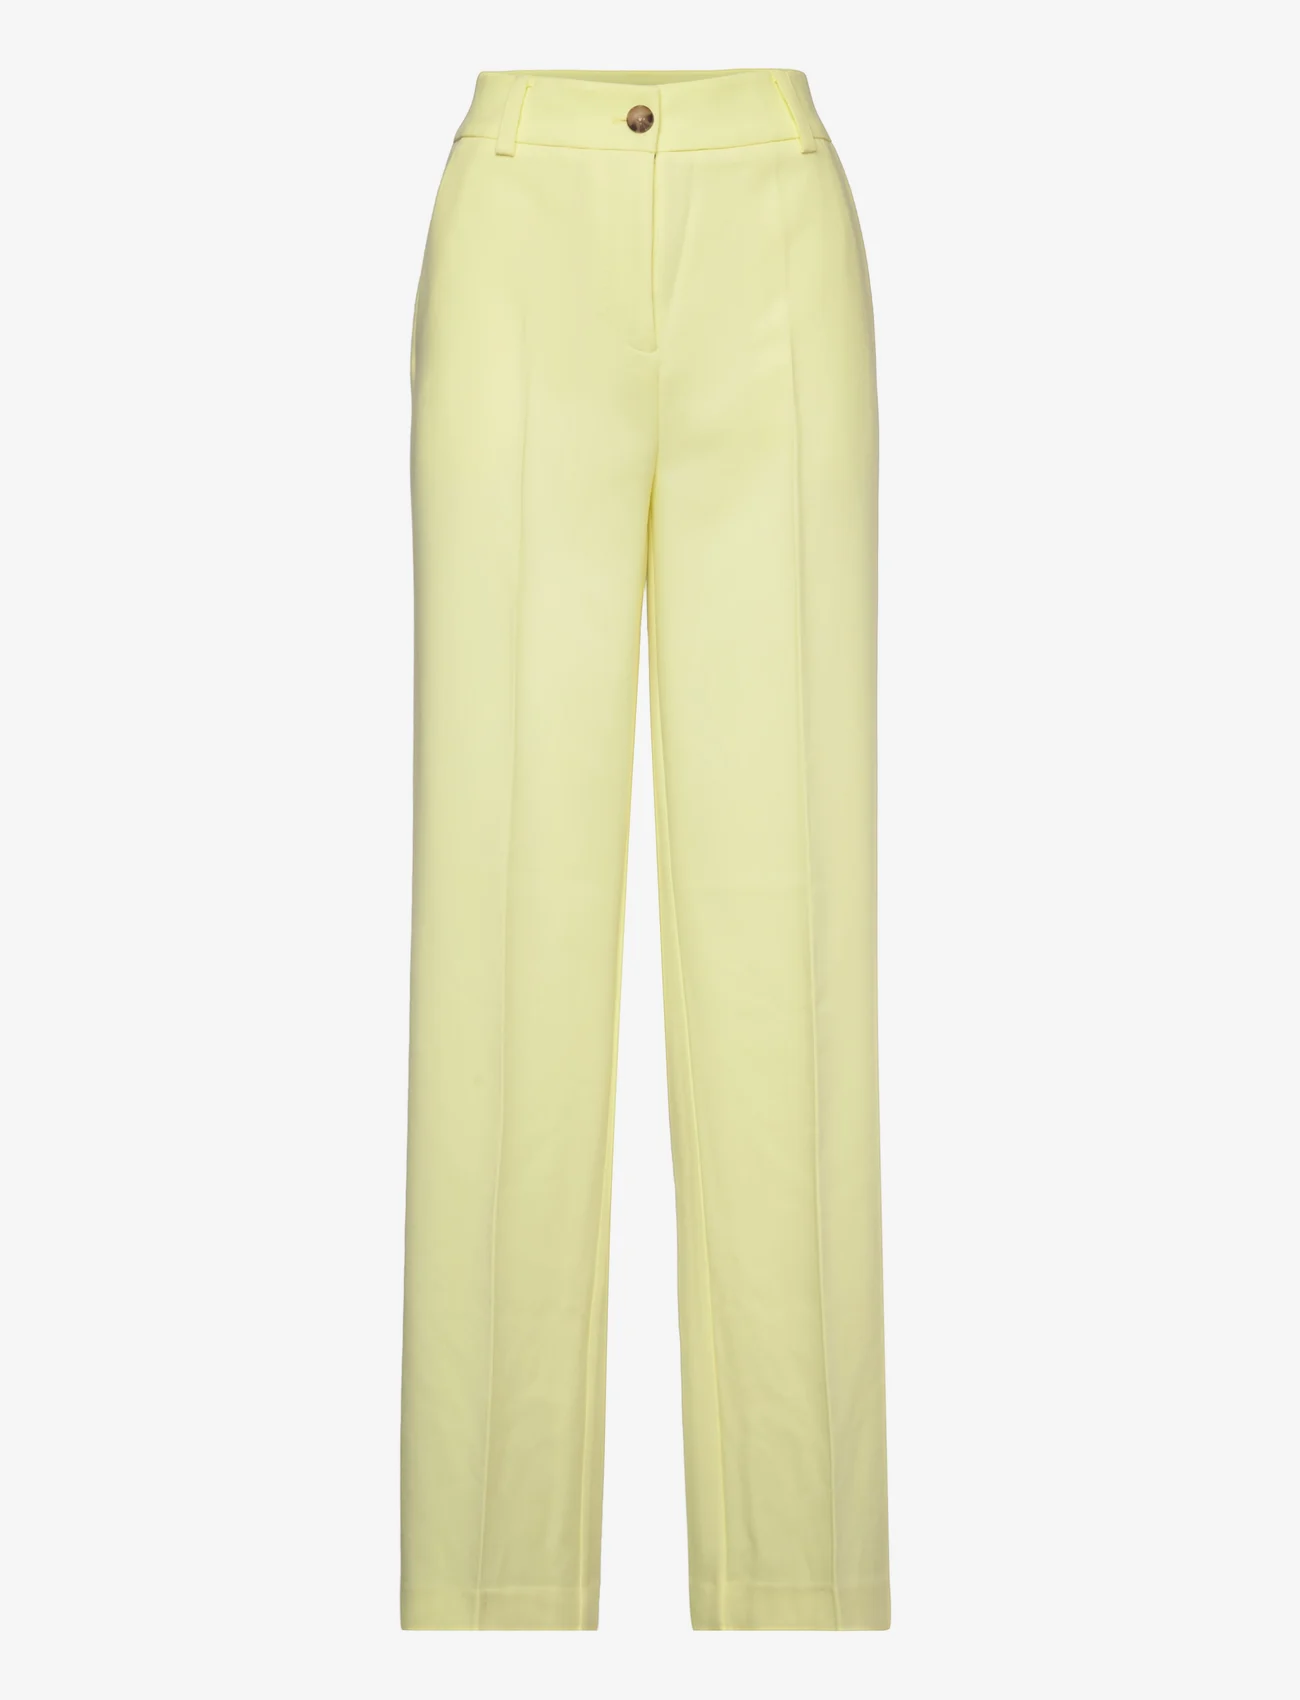 Modström - Gale pants - festtøj til outletpriser - yellow pear - 0